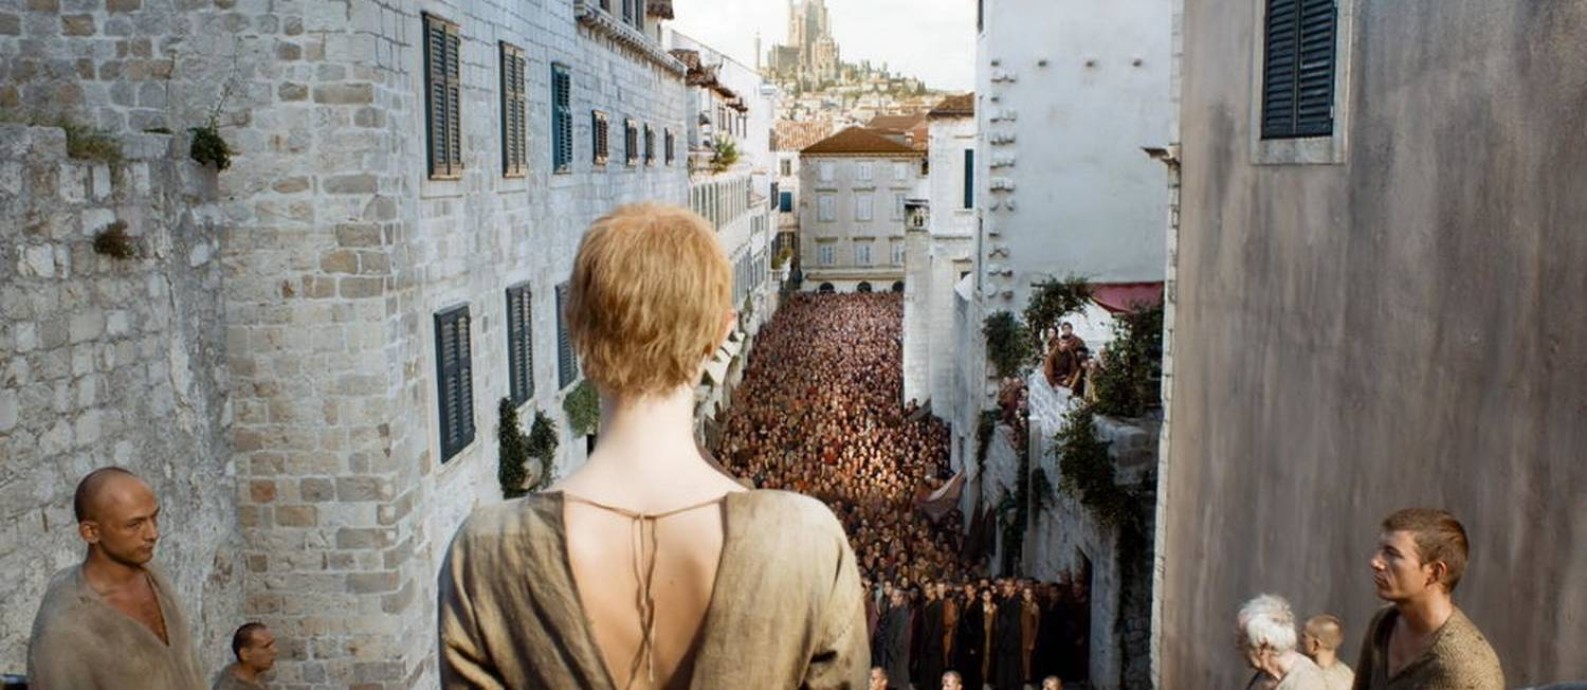 A 'caminhada da vergonha', uma das cenas emblemáticas de 'Game of Thrones', gravada no centro antigo de Dubrovnik, na Croácia Foto: Reprodução